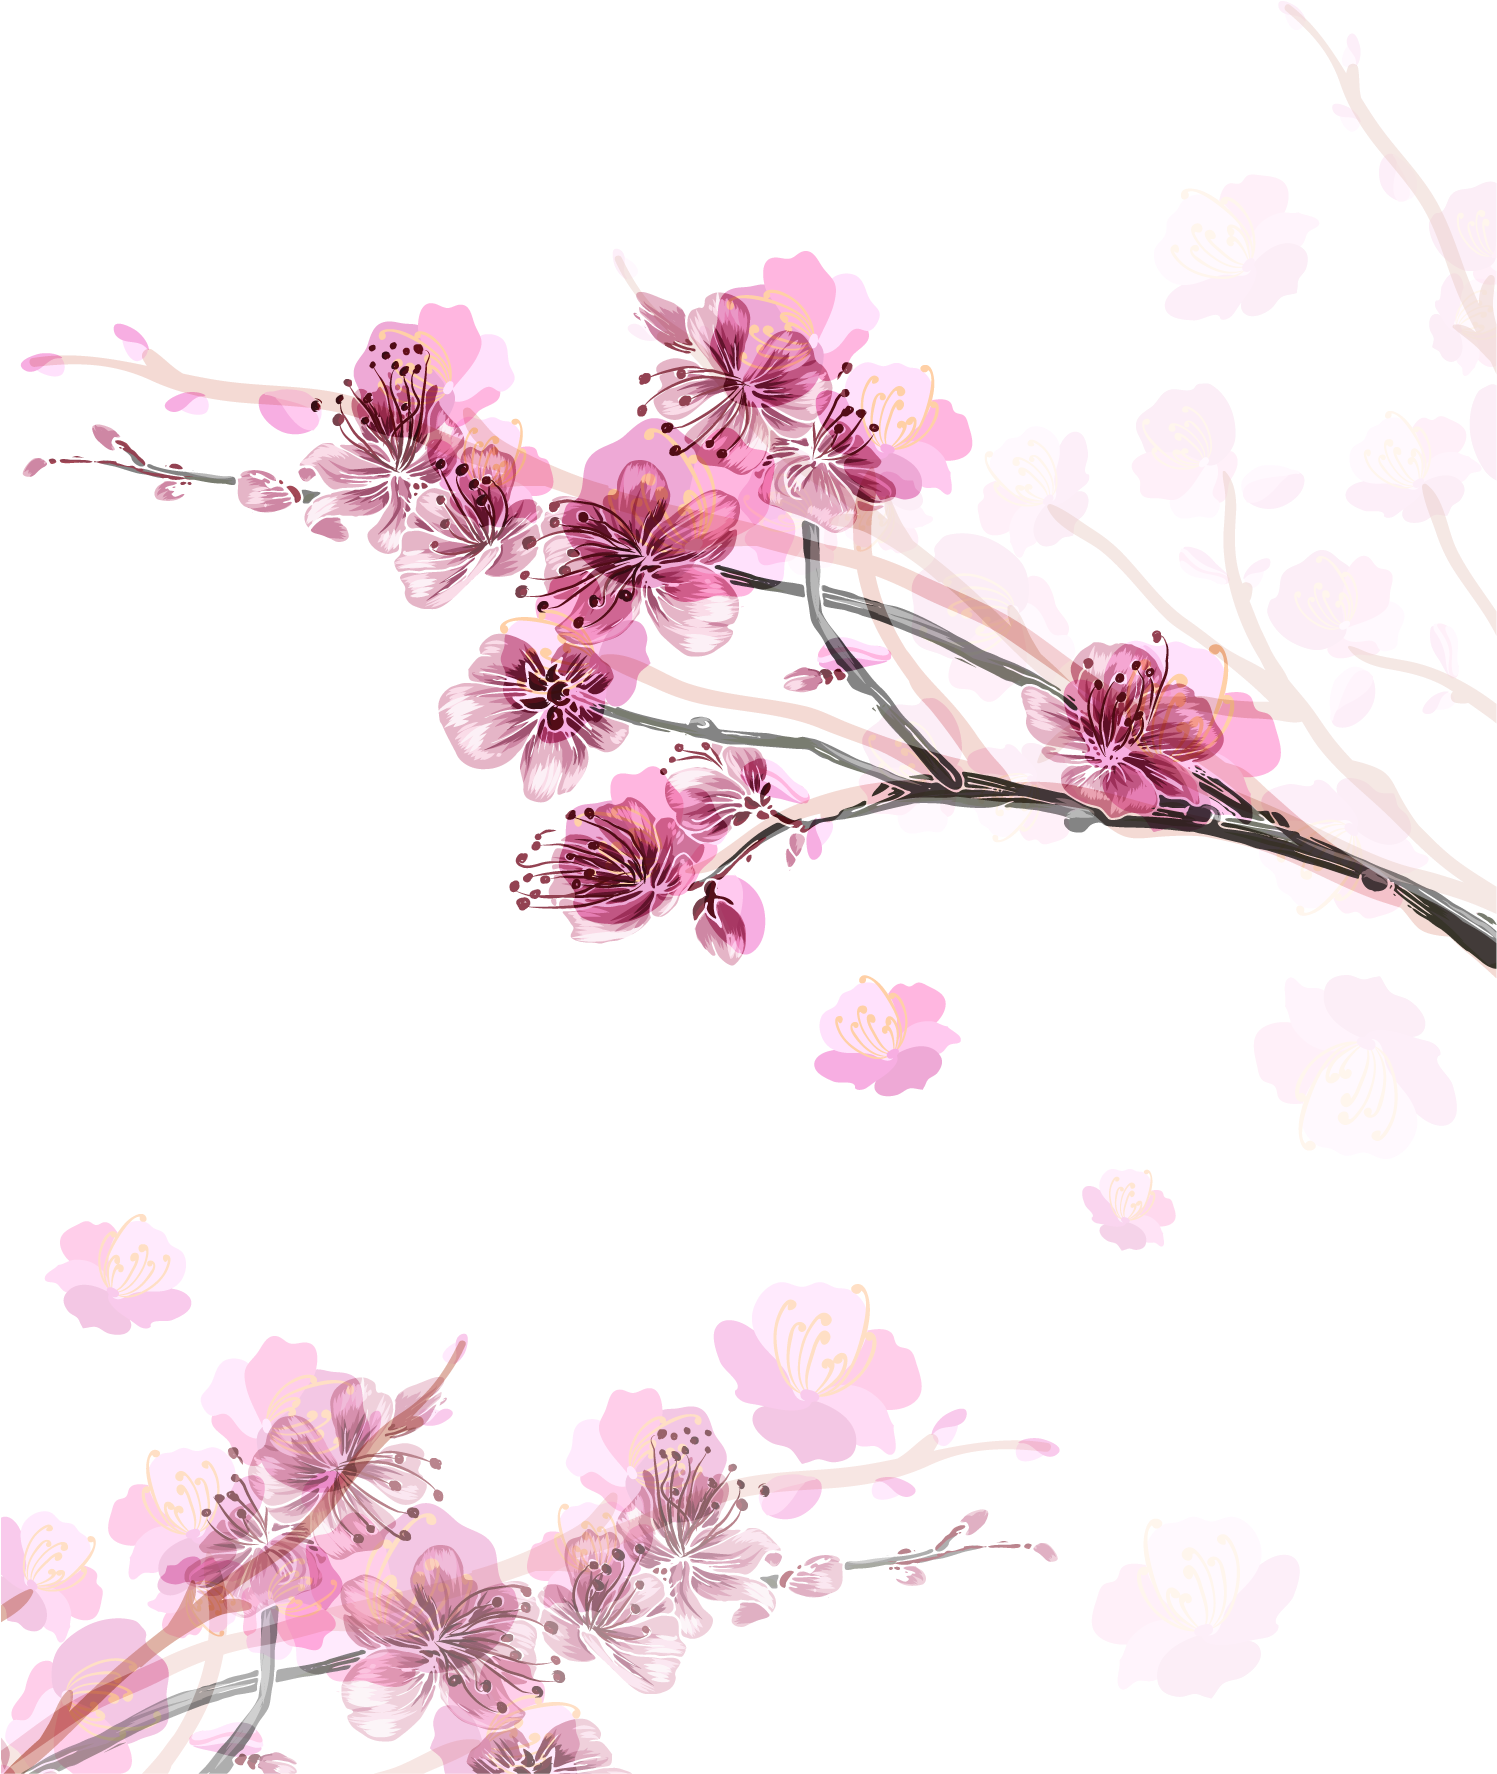 Paper Cherry Blossom Flower - Cherry Blossom Transparent Paper (1500x1836)